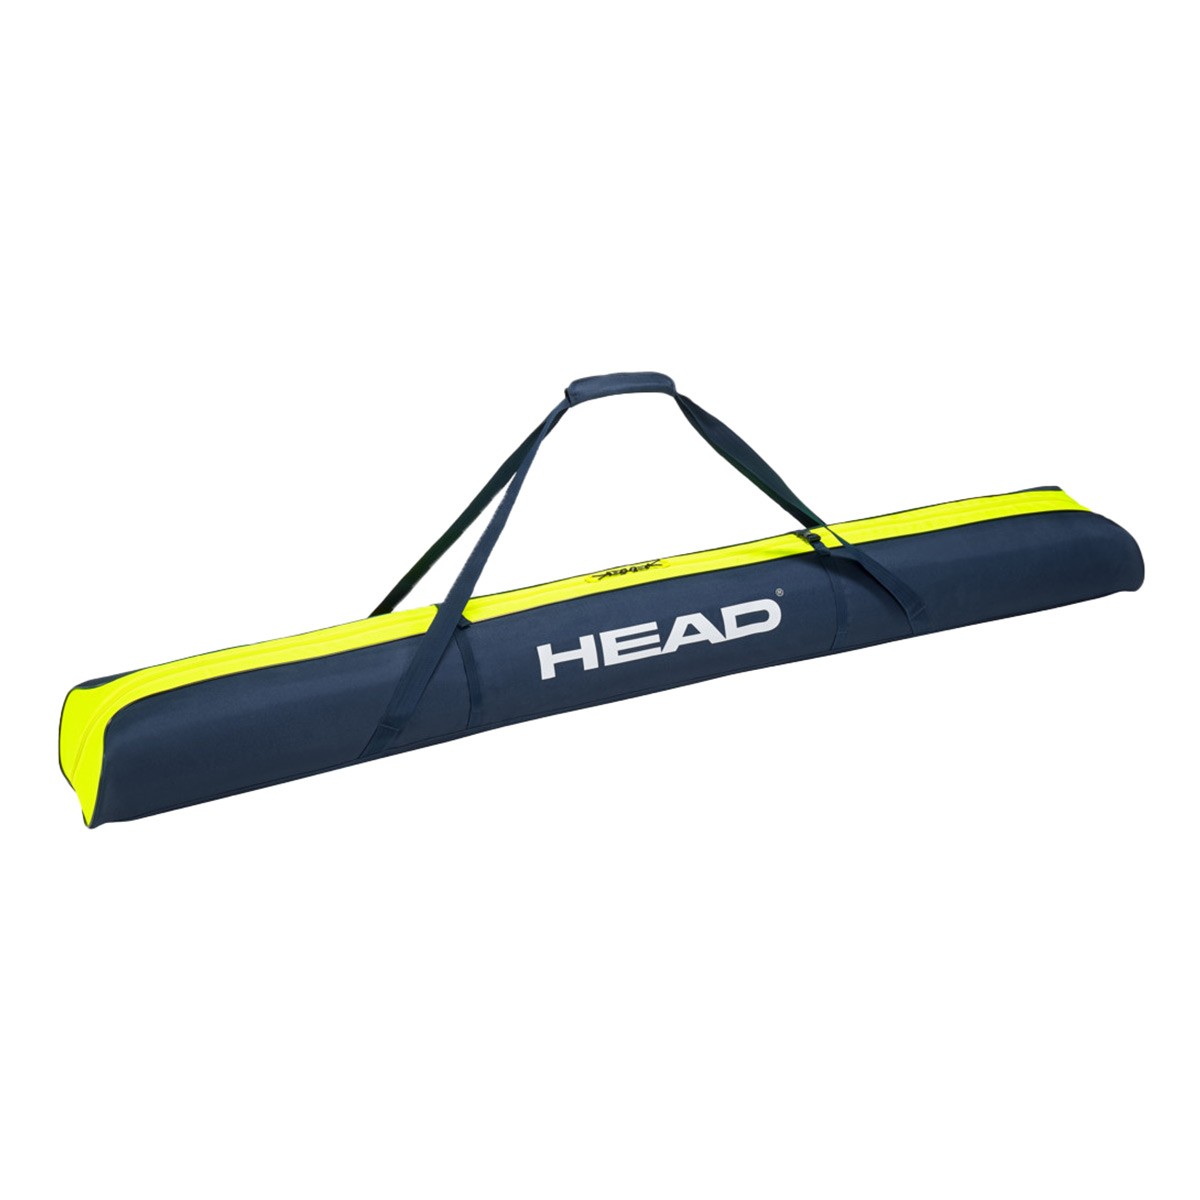  Sacca porta sci Head Double Ski Bag 195 (Colore: nero giallo, Taglia: 195) 